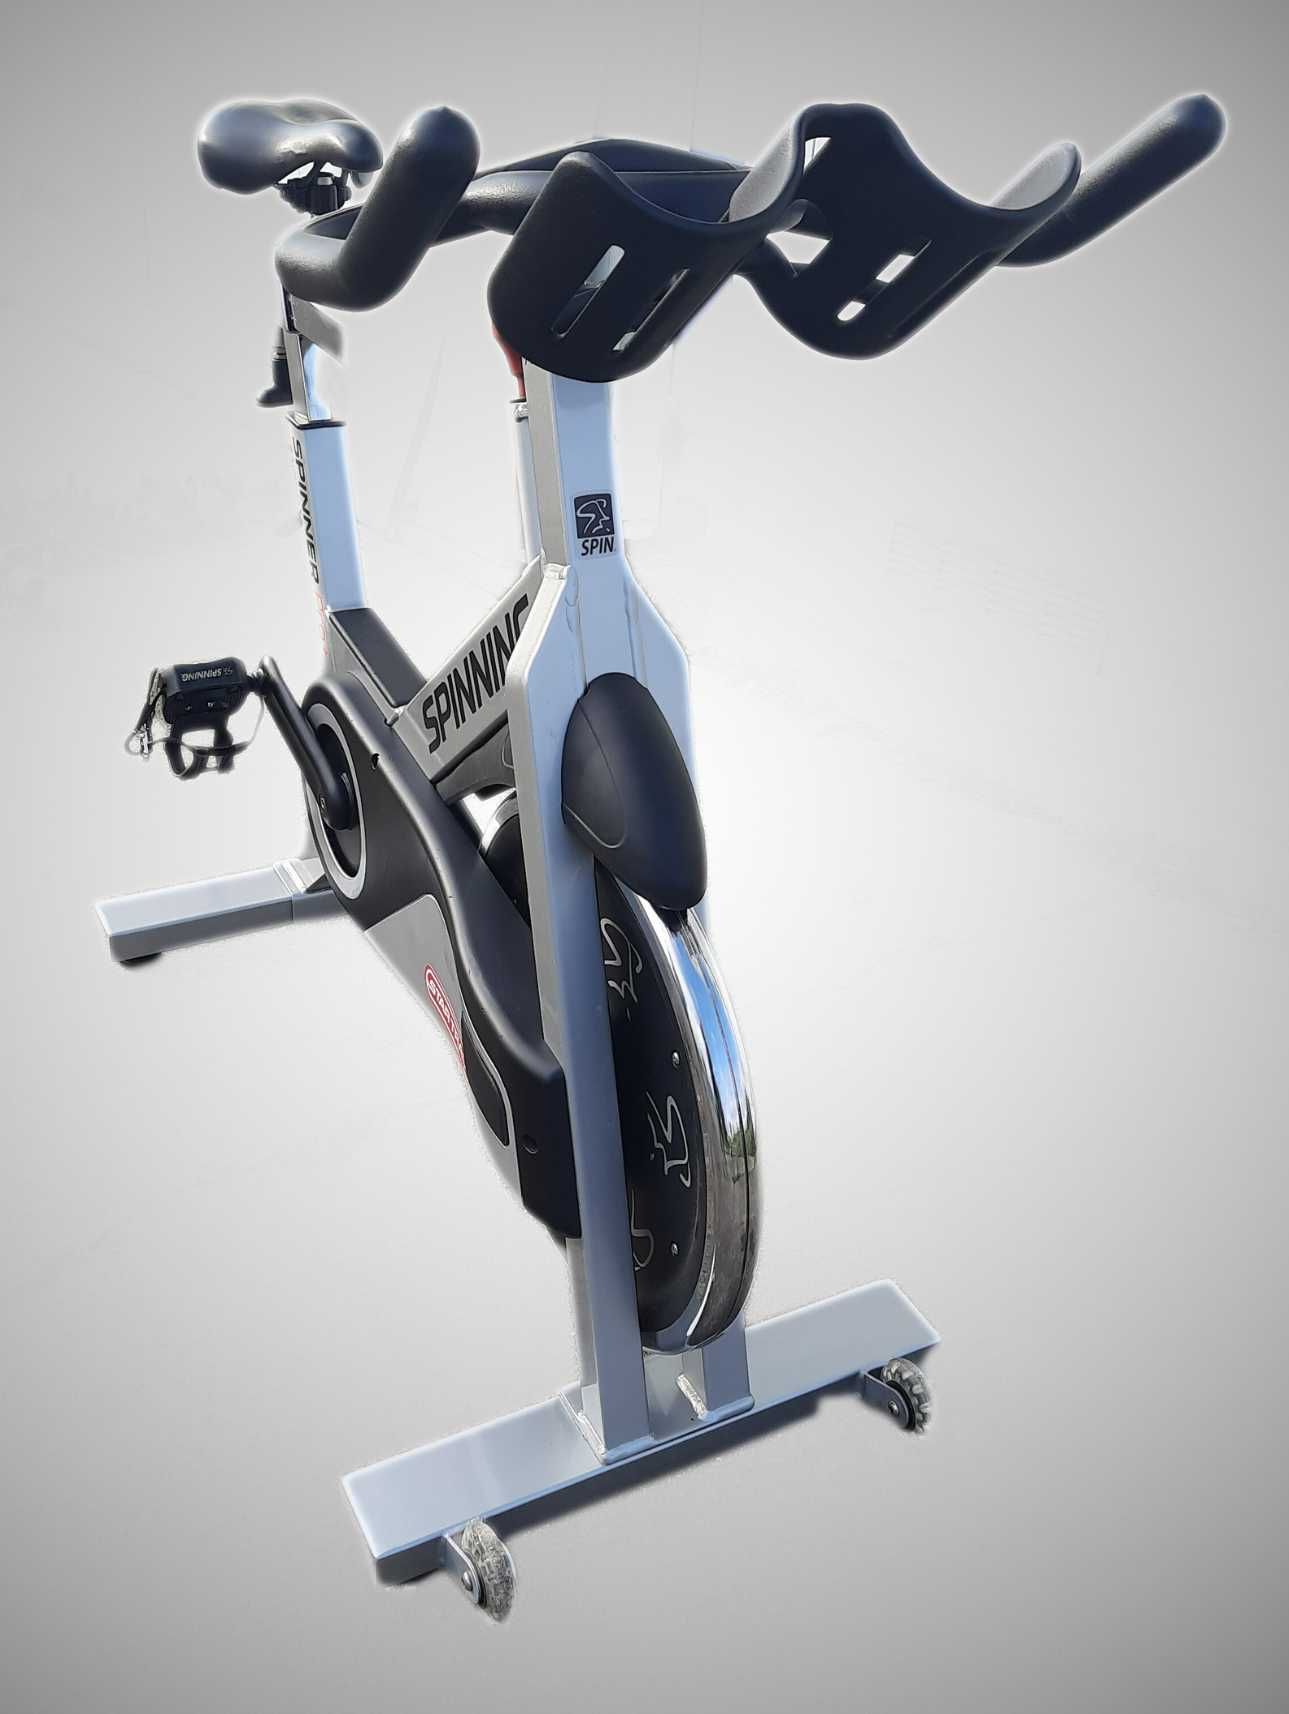 Profesjonalny rower do spinningu Star Trac Pro+